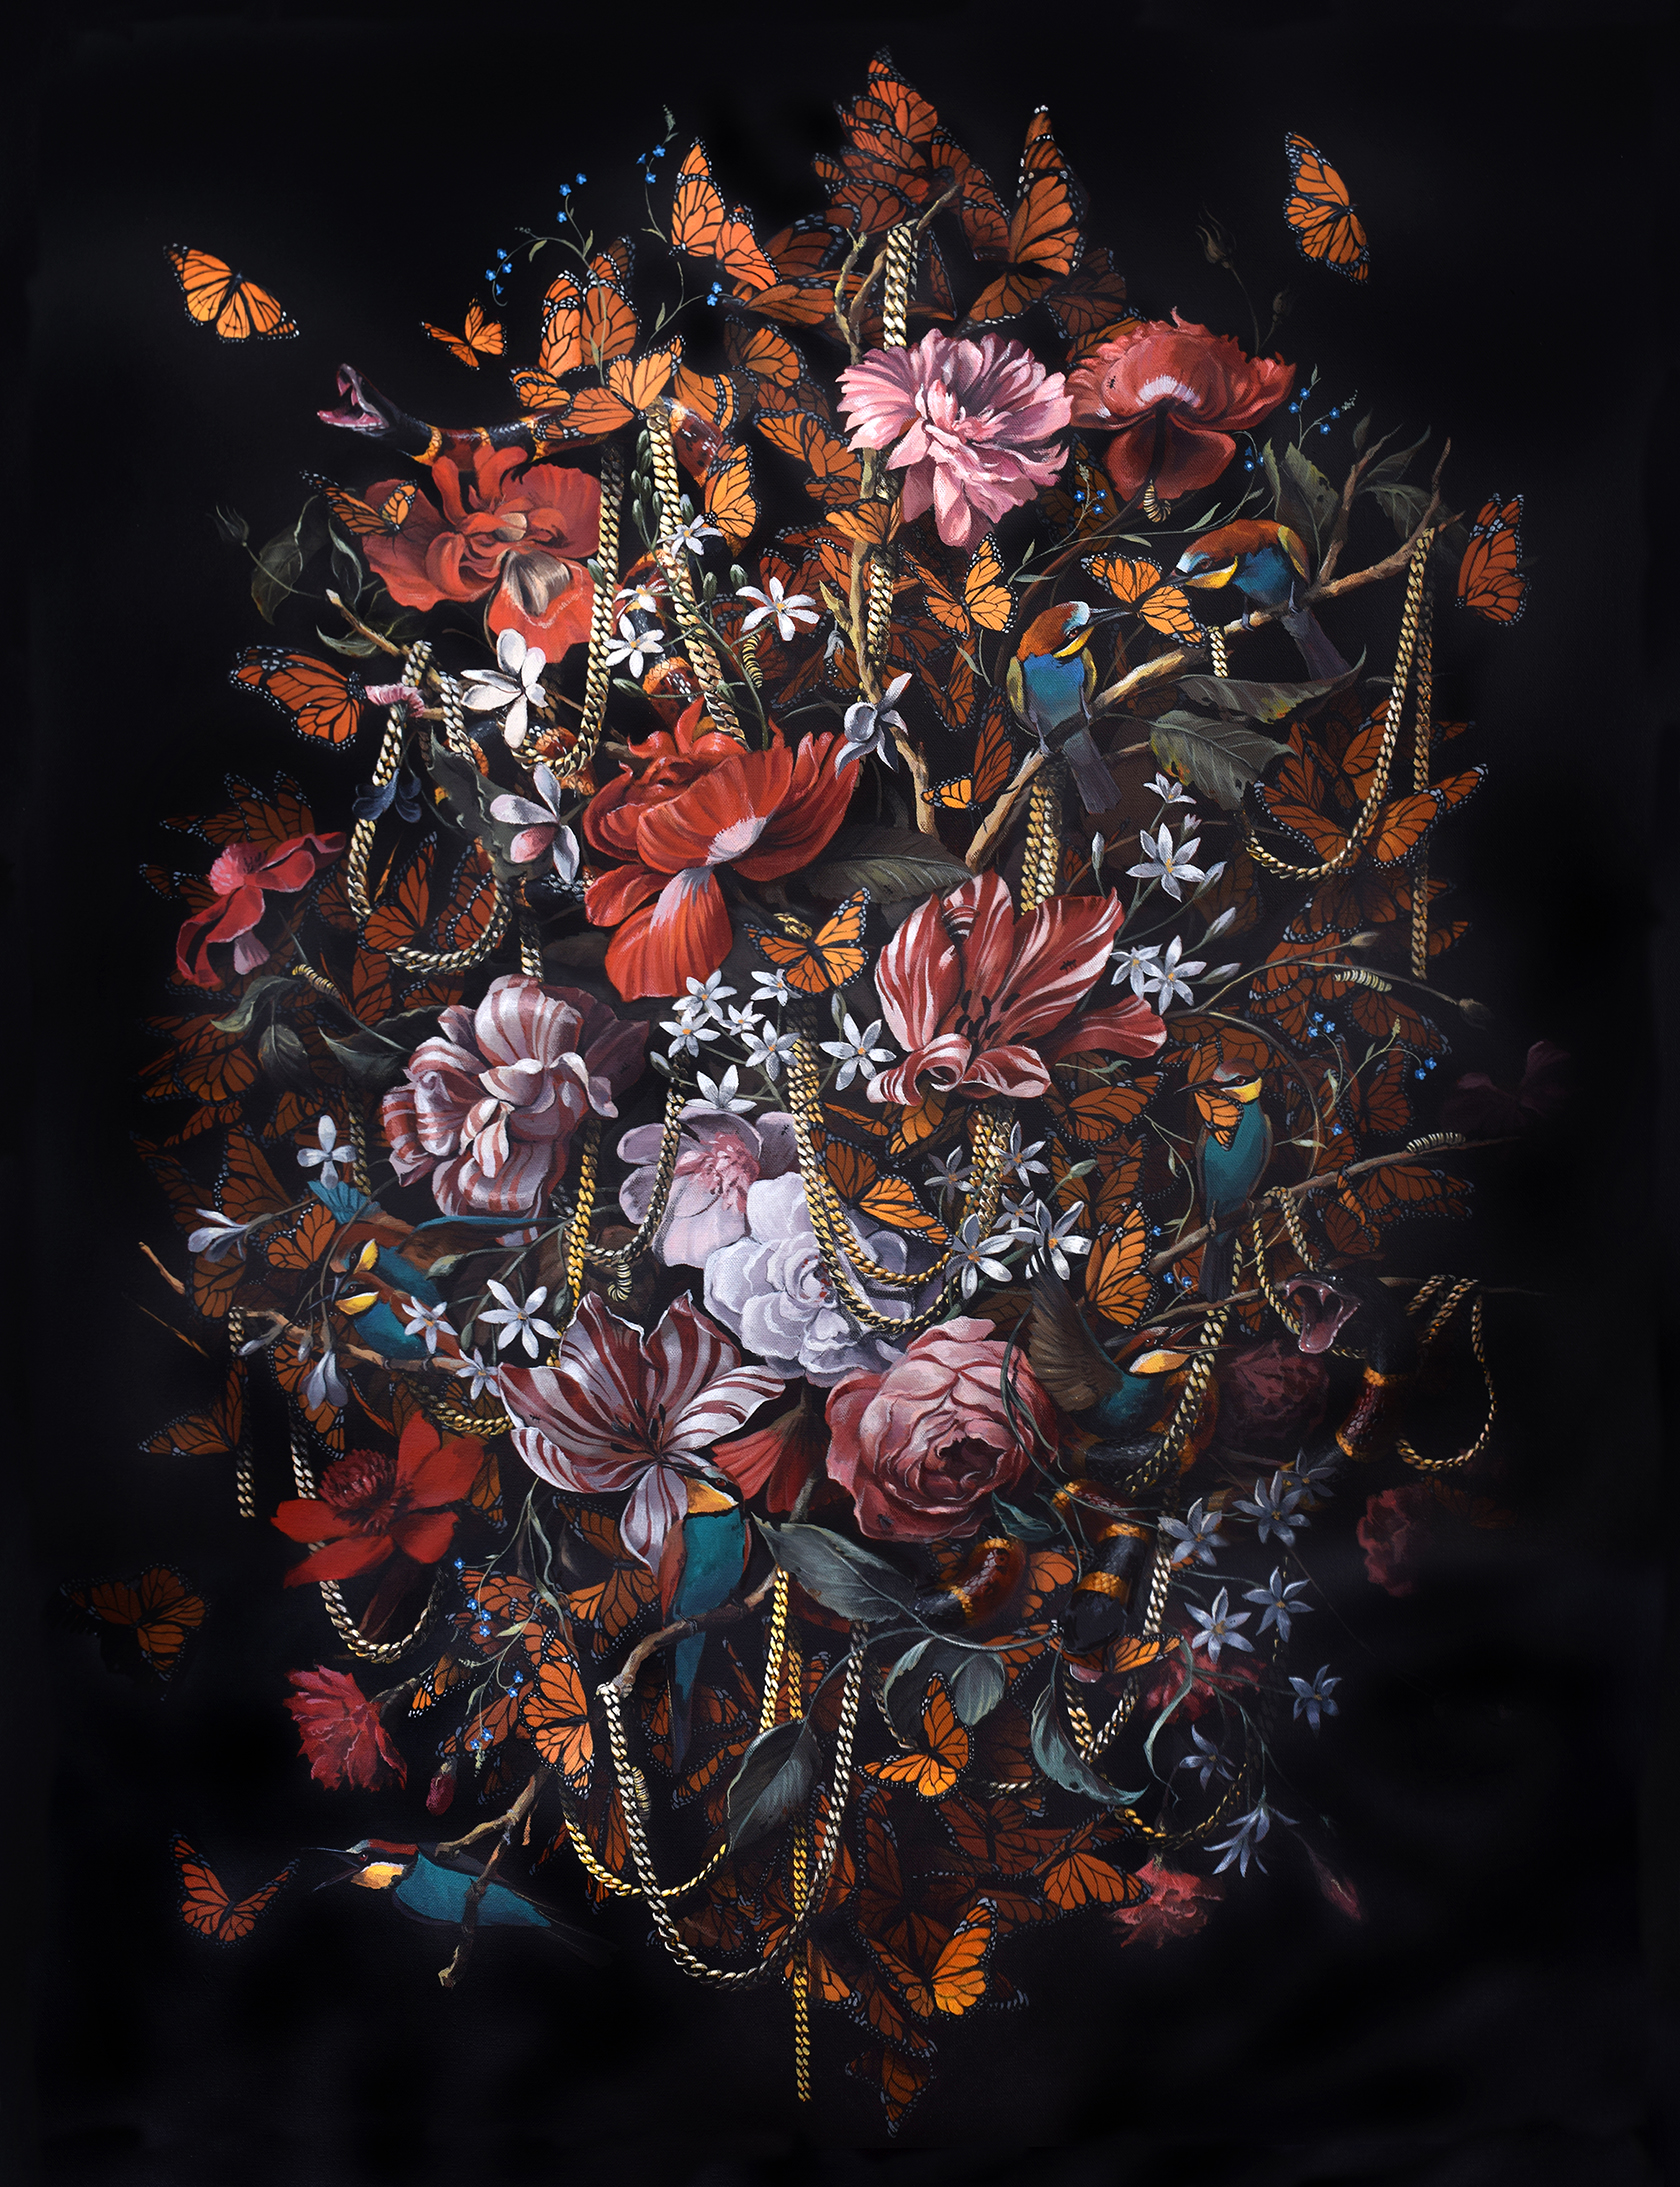   Monarchy, 2015  Acrylic on Canvas 92 x 122 cm / 36 x 48 in 